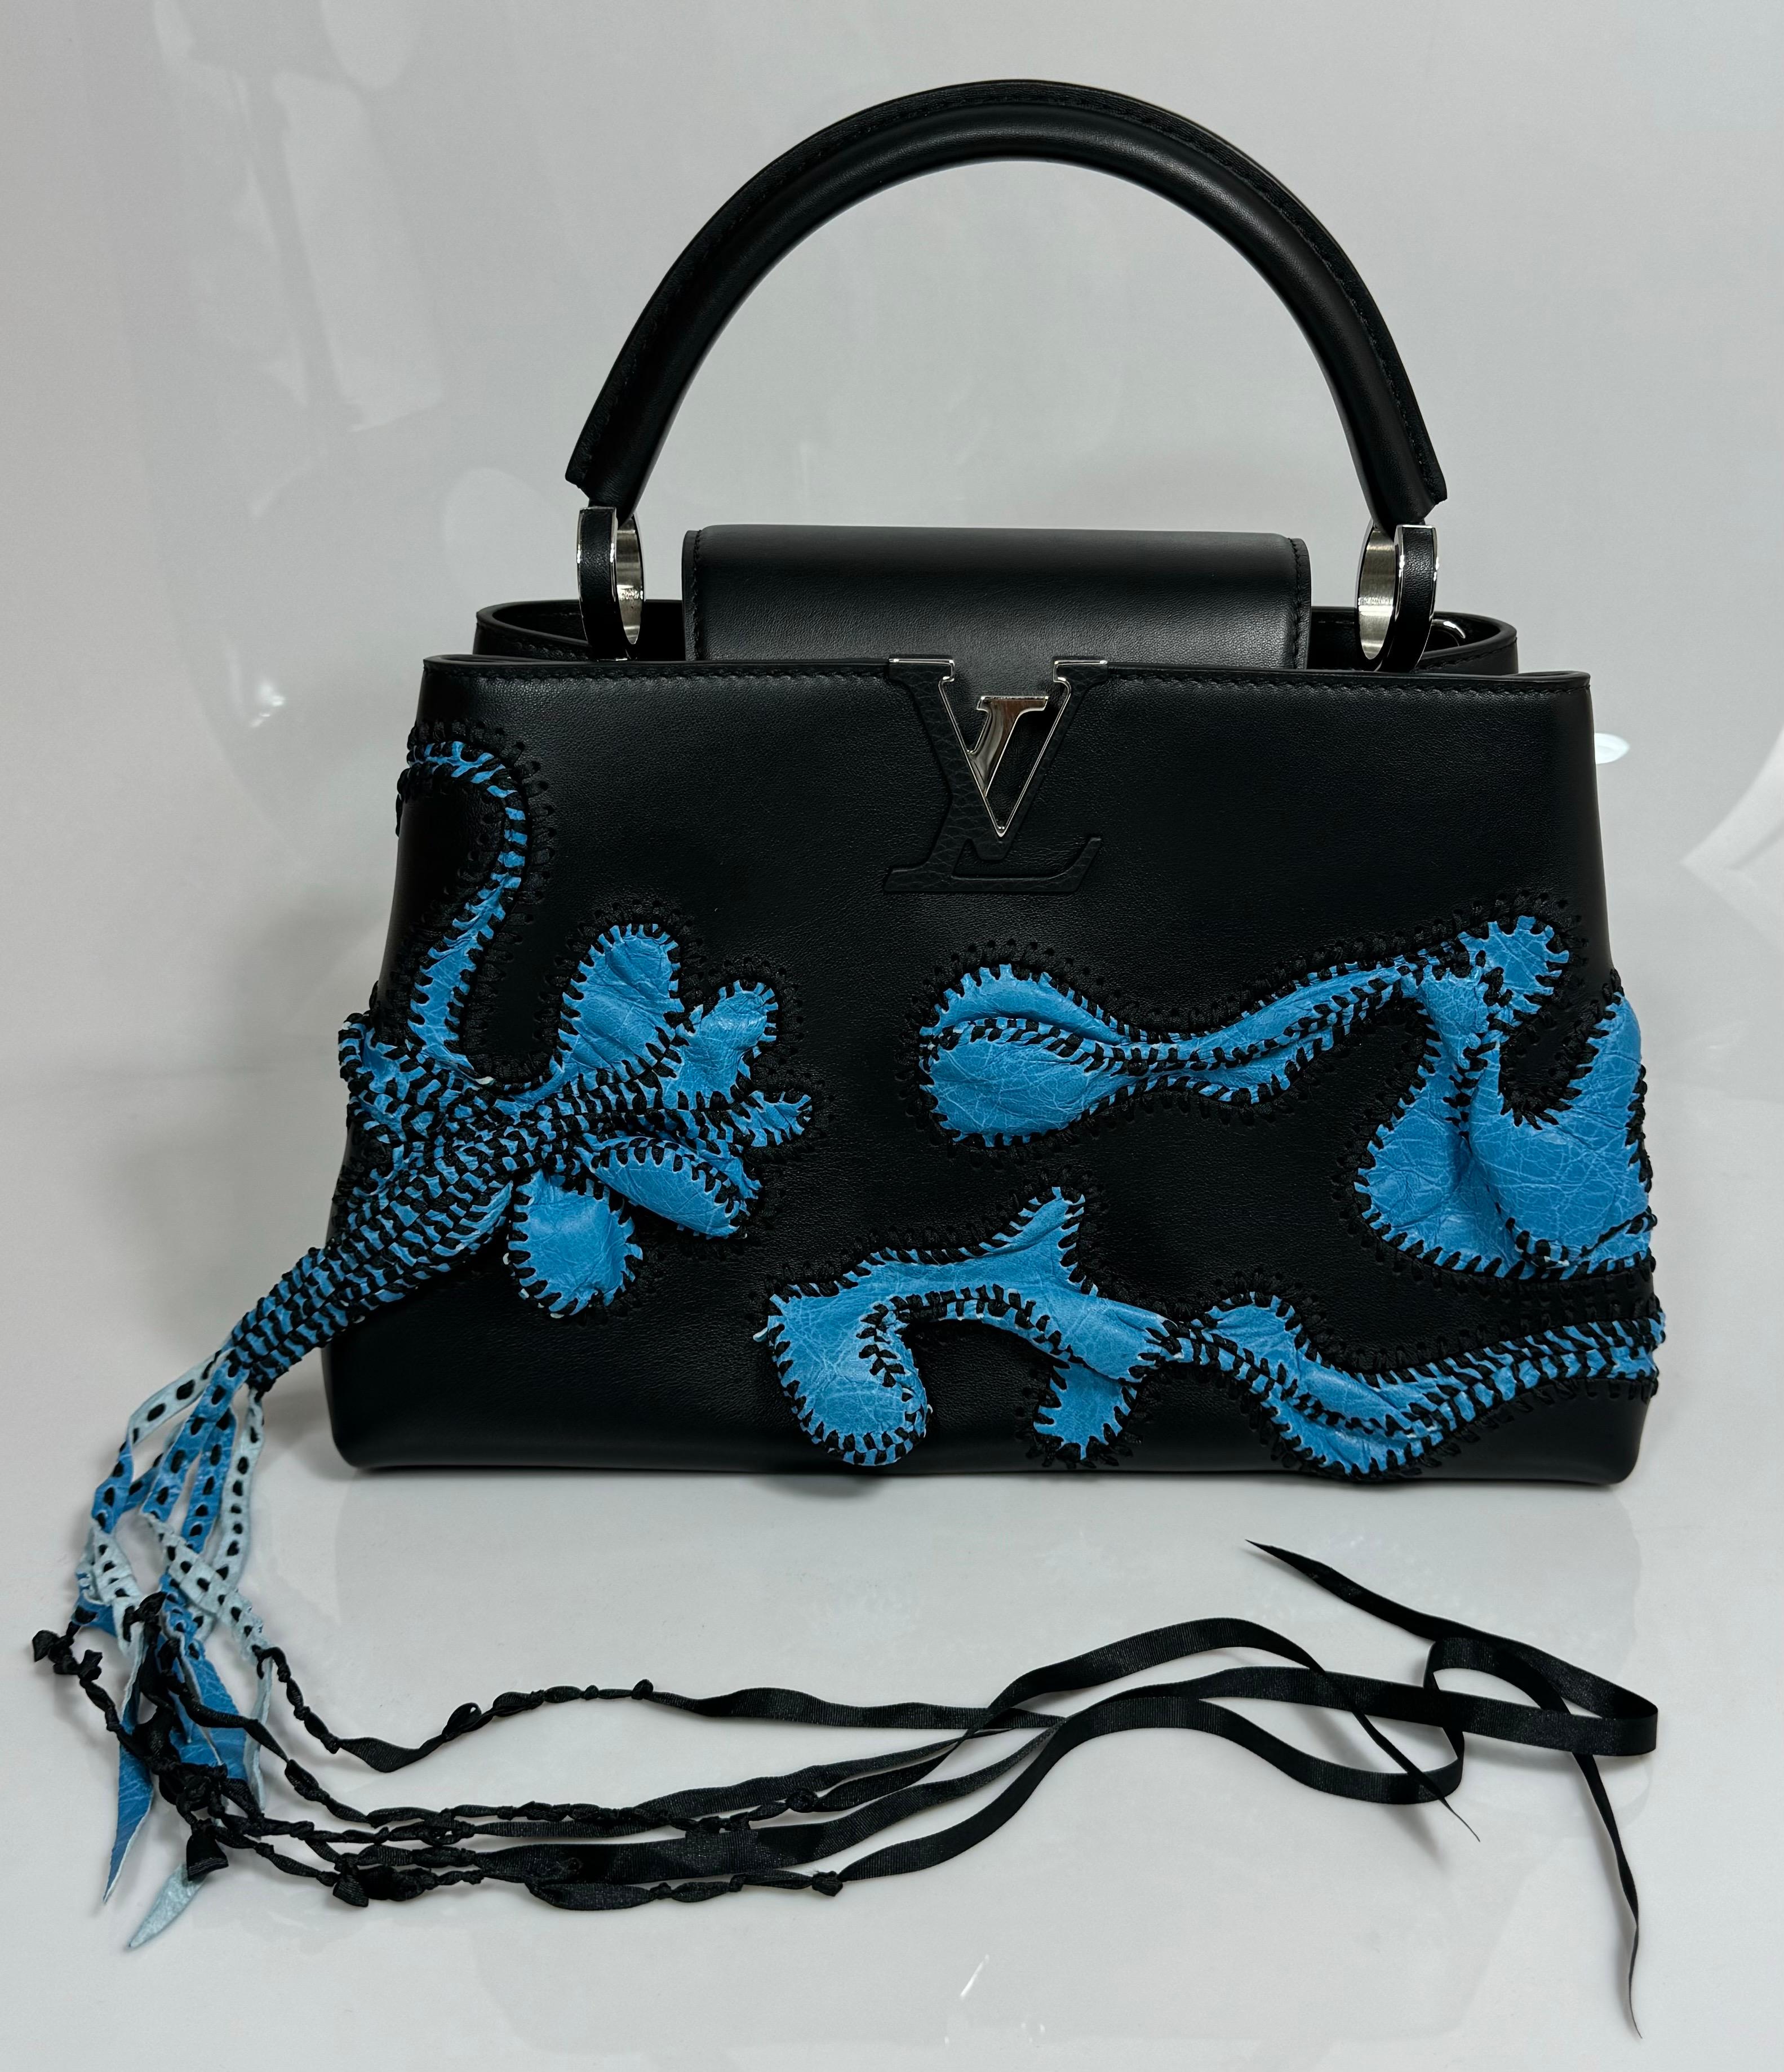 Louis Vuitton Limited Edition Nicholas Hlobo's Artycapucines Handbag-NEW IN BOX
Ce tout nouveau sac à main Louis Vuitton Nicholas Hlobo Limited Edition Artycapucines est réalisé en cuir de veau noir et bleu avec une doublure en cuir de vachette. Il